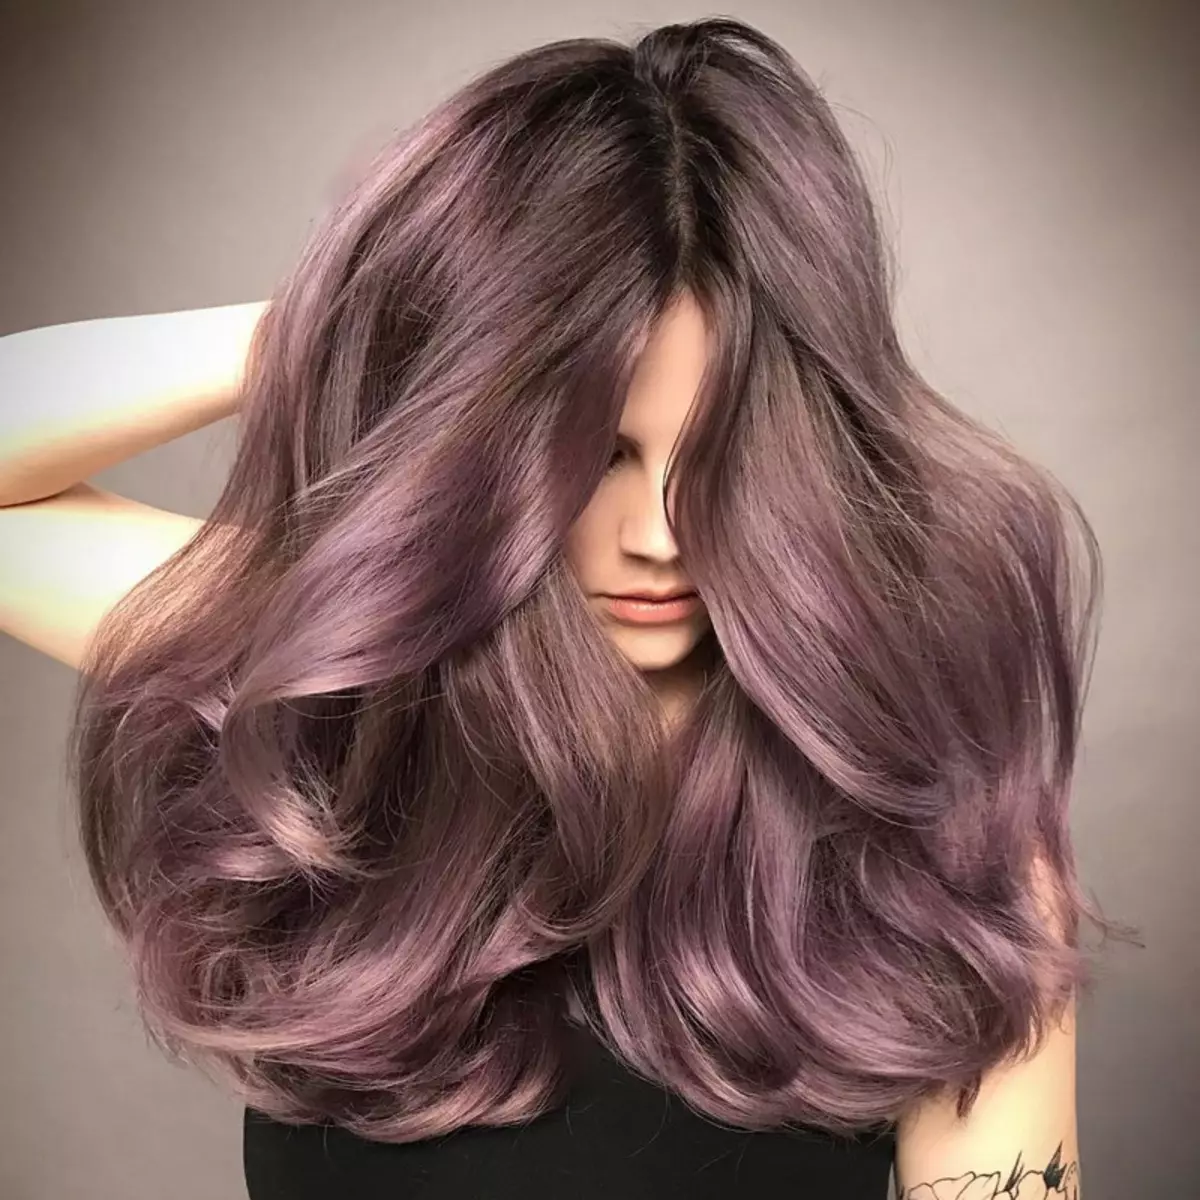 Палитра коричневых волос. Руссо пепельный фиолетовый цвет волос. Балаяж лиловый шоколад. Темно русый с фиолетовым оттенком. Русые волосы с фиолетовым оттенком.